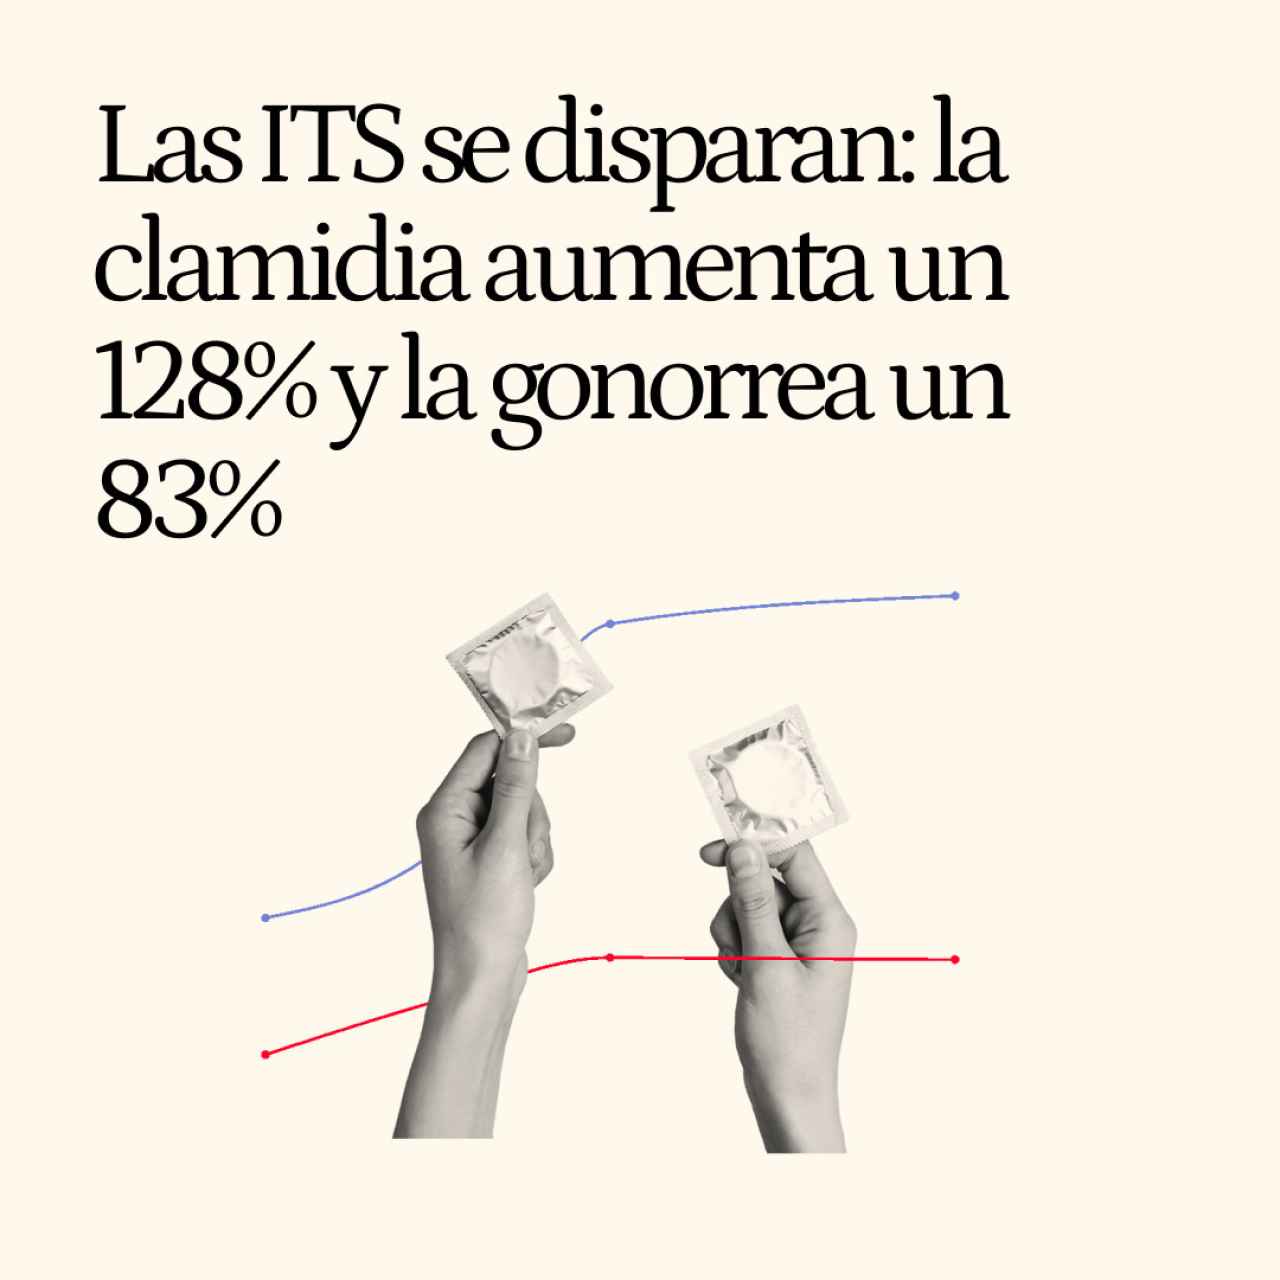 Las ITS se disparan en los adolescentes en España: la clamidia aumenta un 128% y la gonorrea un 83%